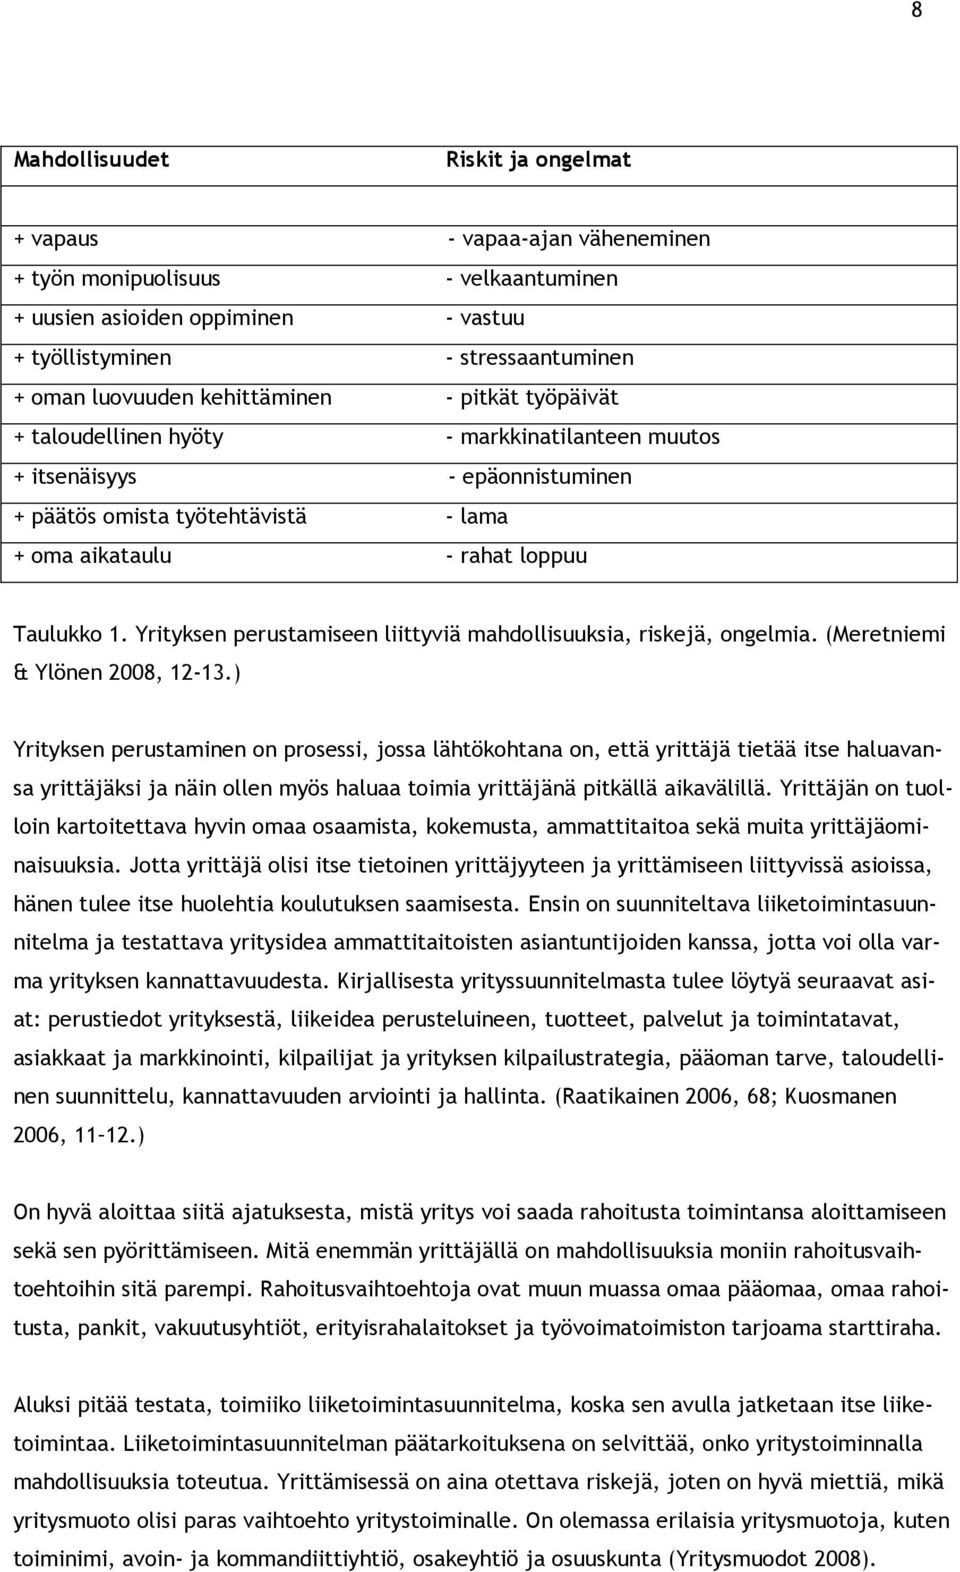 Yrityksen perustamiseen liittyviä mahdllisuuksia, riskejä, ngelmia. (Meretniemi & Ylönen 2008, 12-13.